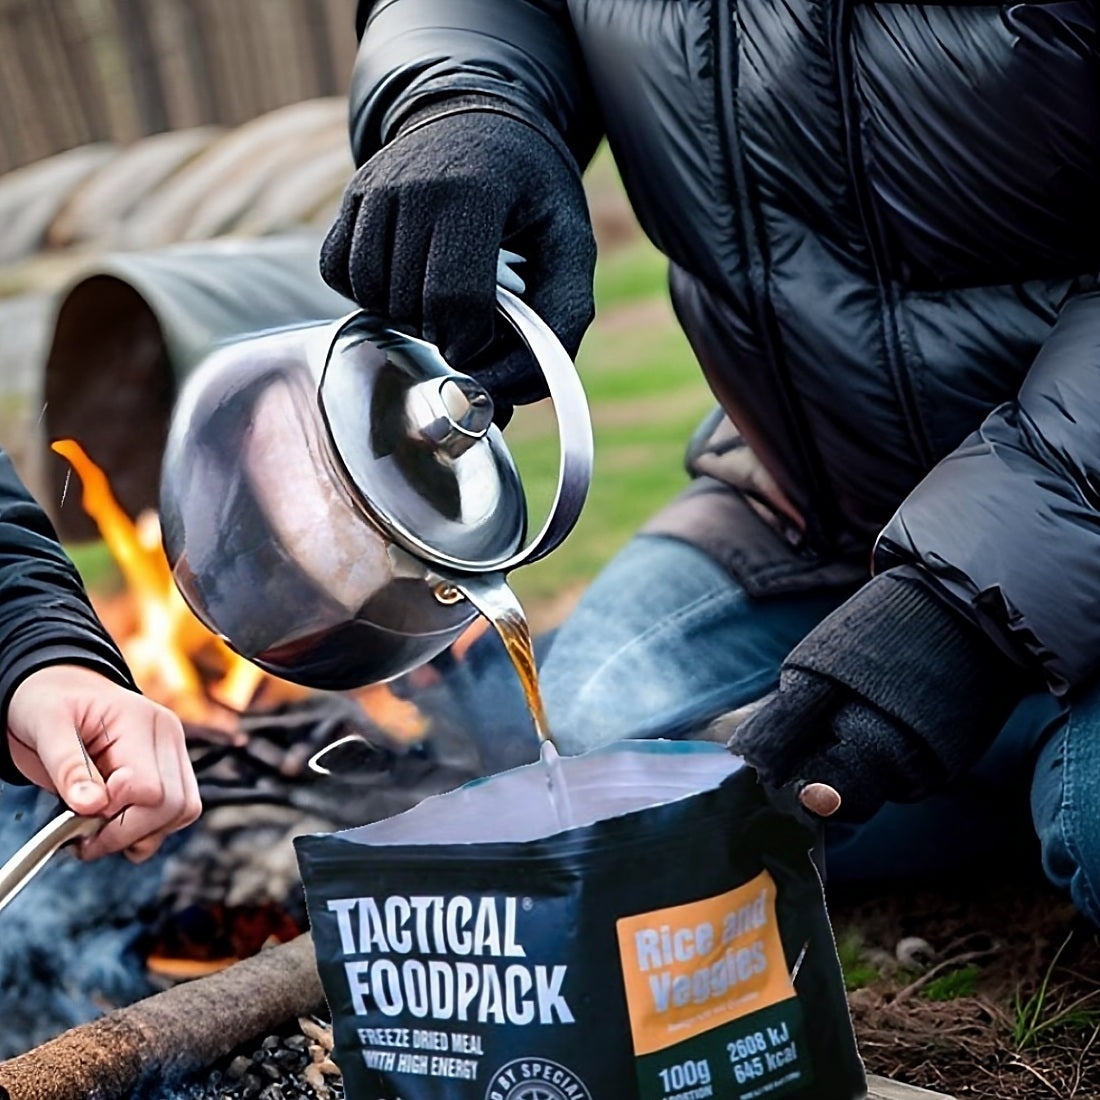 Tactical Foodpack Buckwheat Pot and Turkey - Taktische Notfallnahrung für Spezialkräfte in Krisensituationen